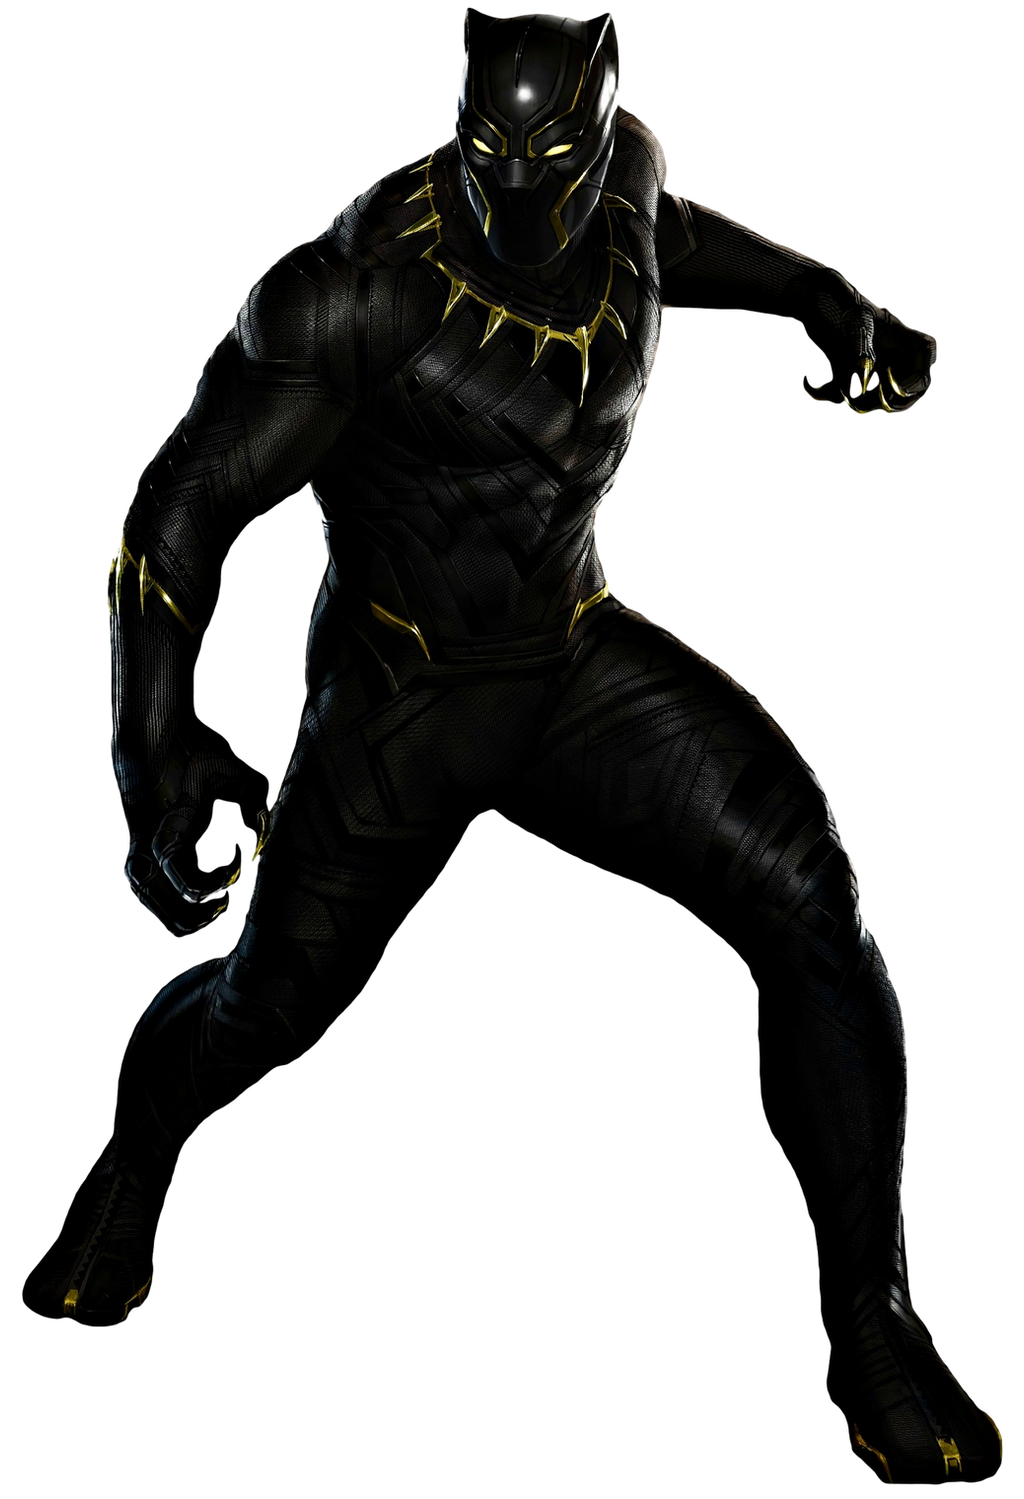 Black Panther Transparent Background By Camo Flauge On Deviantart